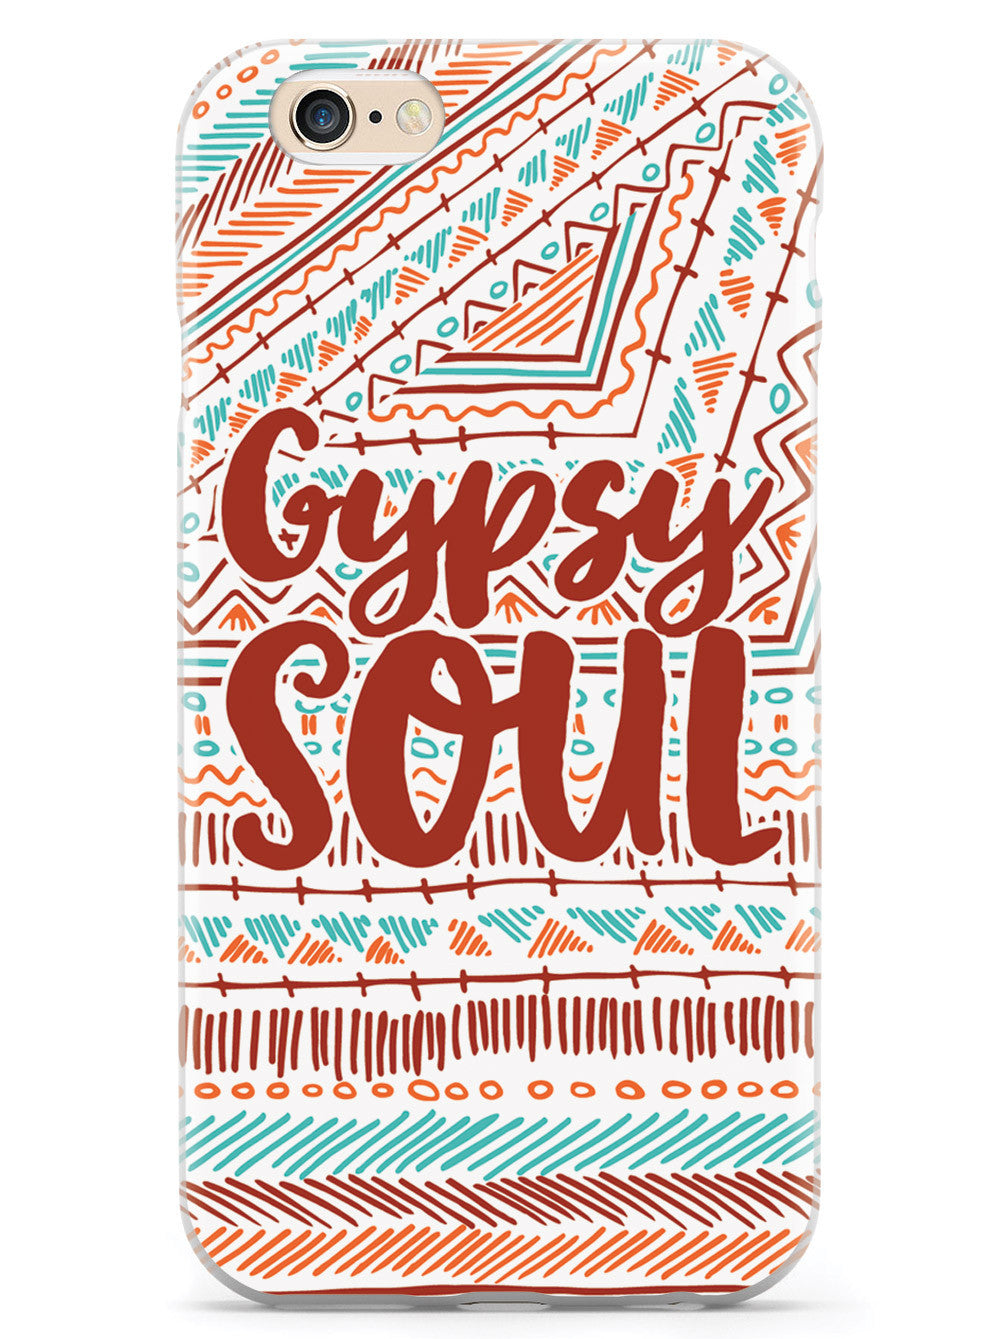 Gypsy Soul Case